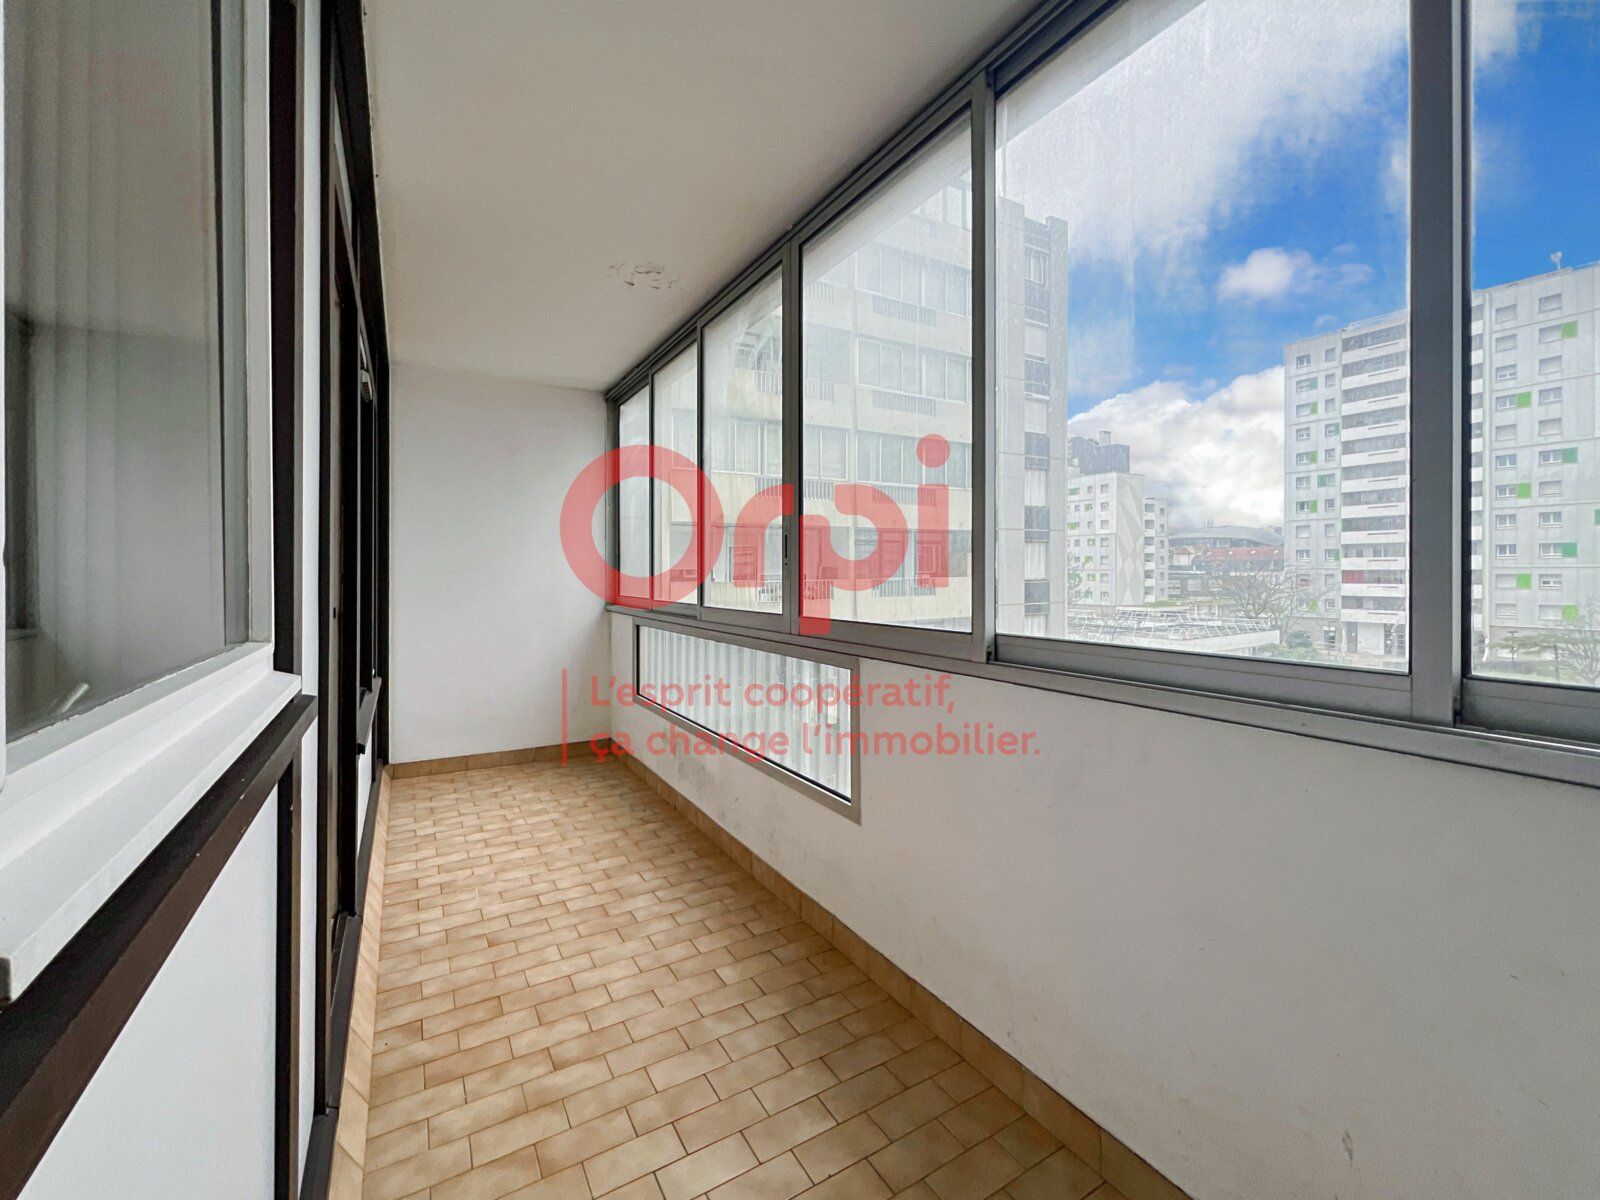 Appartement à vendre 1 30.7m2 à Argenteuil vignette-3